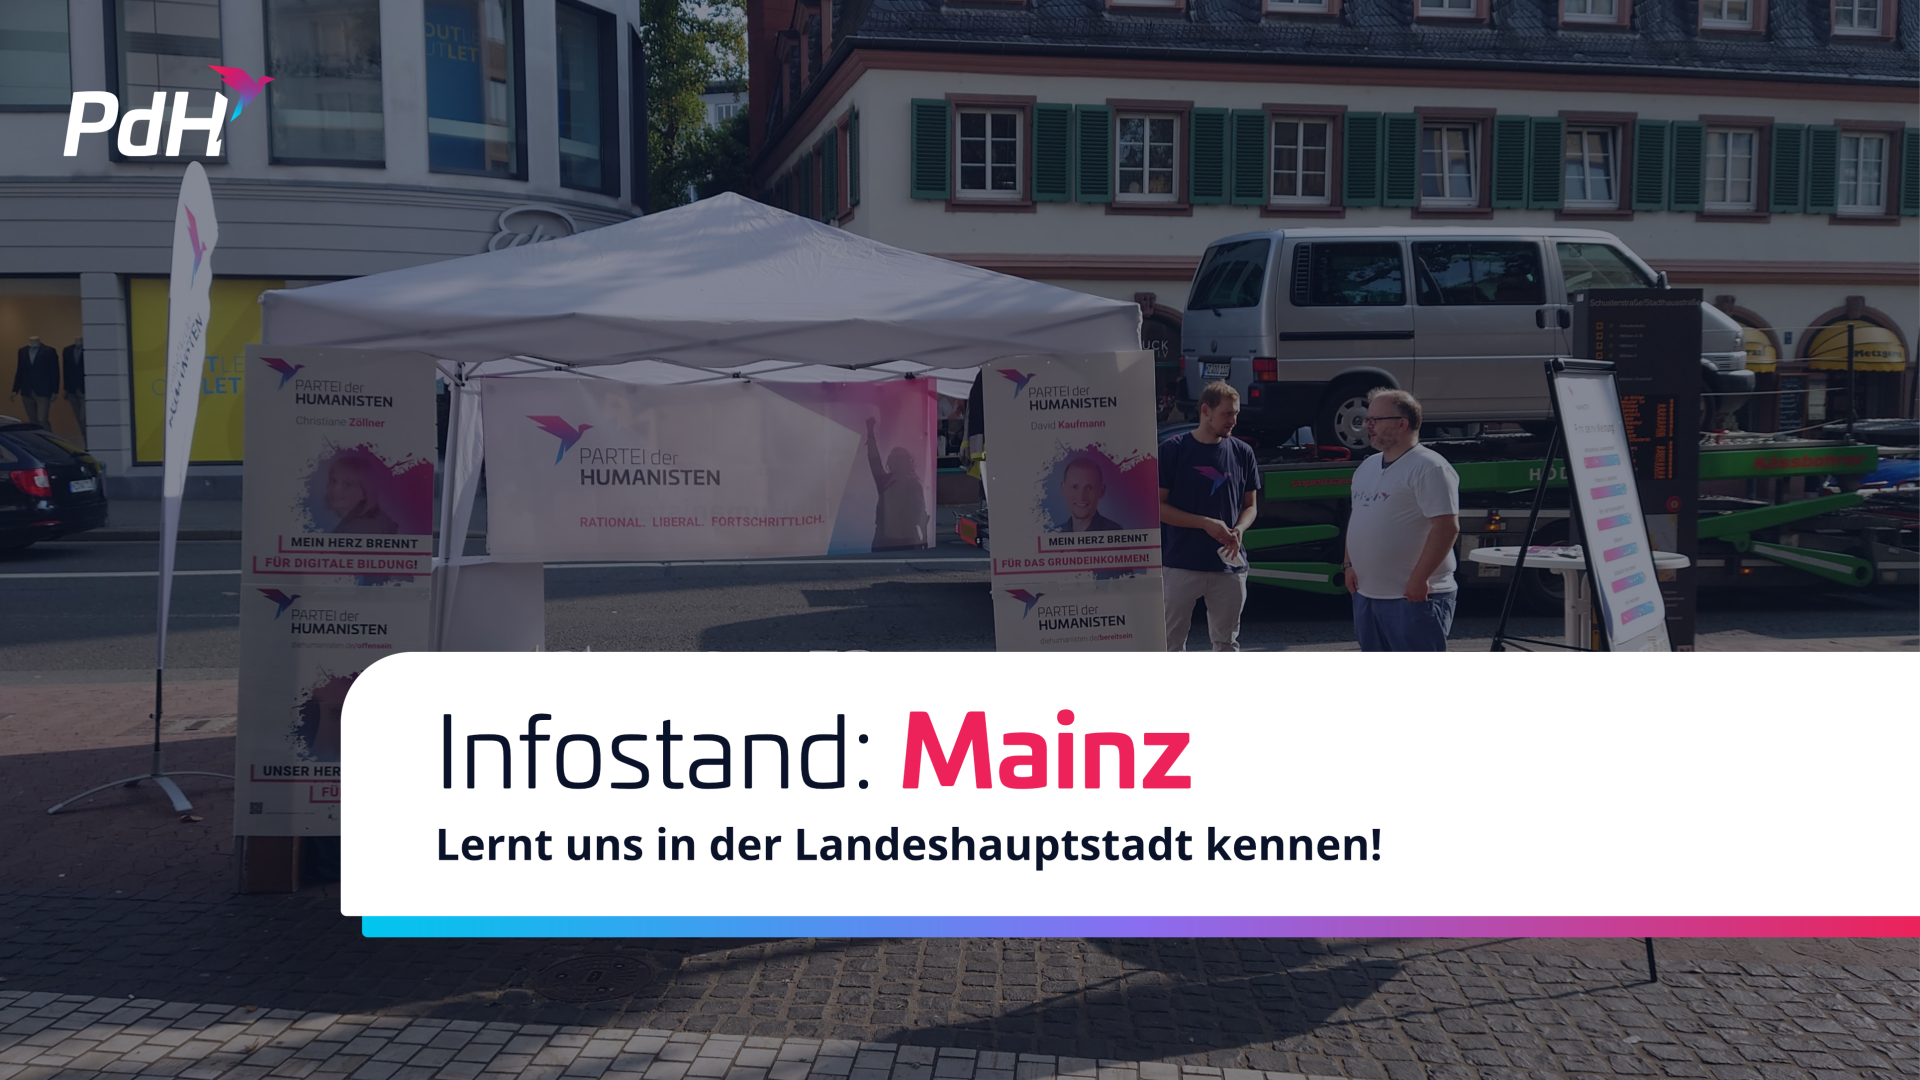 Bild mit der Aufschrift "Infostand Mainz, Lernt uns in der Landeshauptstadt kennen!"